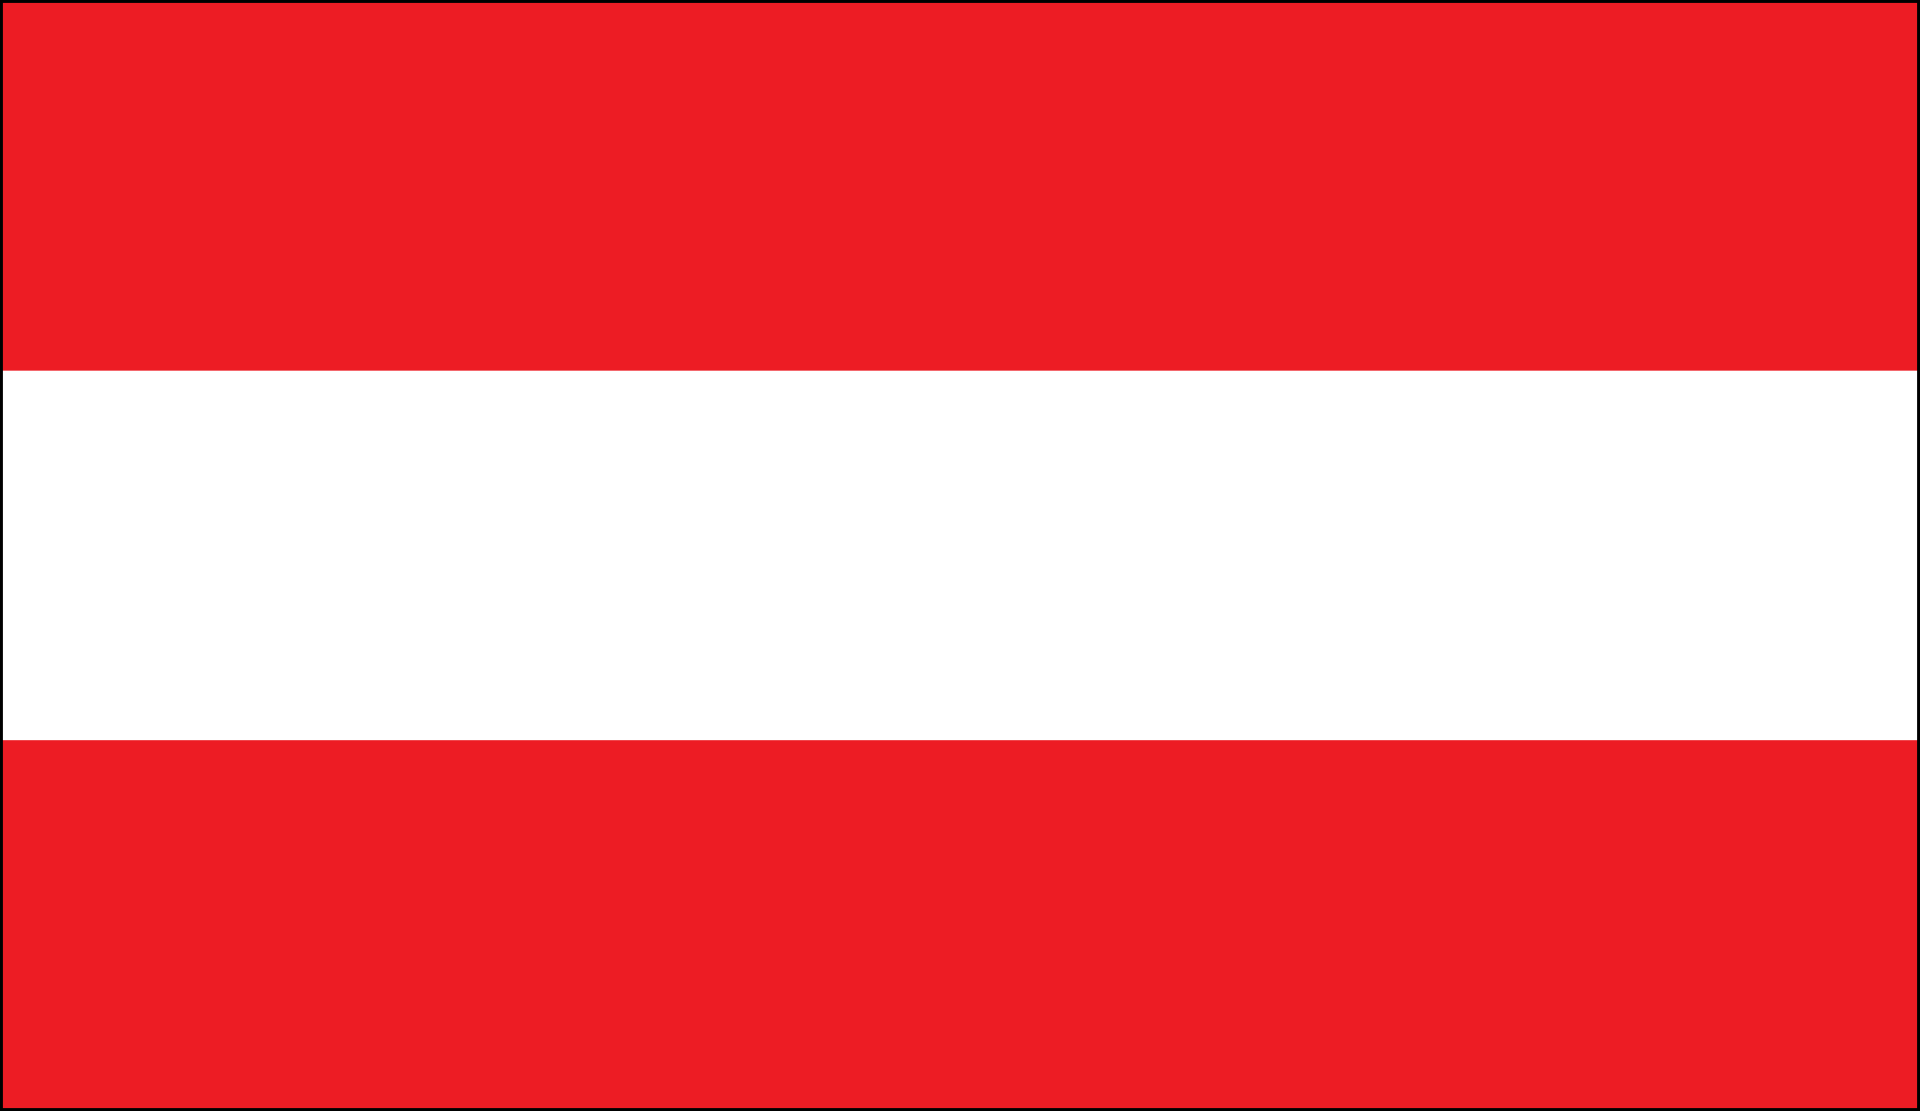 Flags Of Austria 2